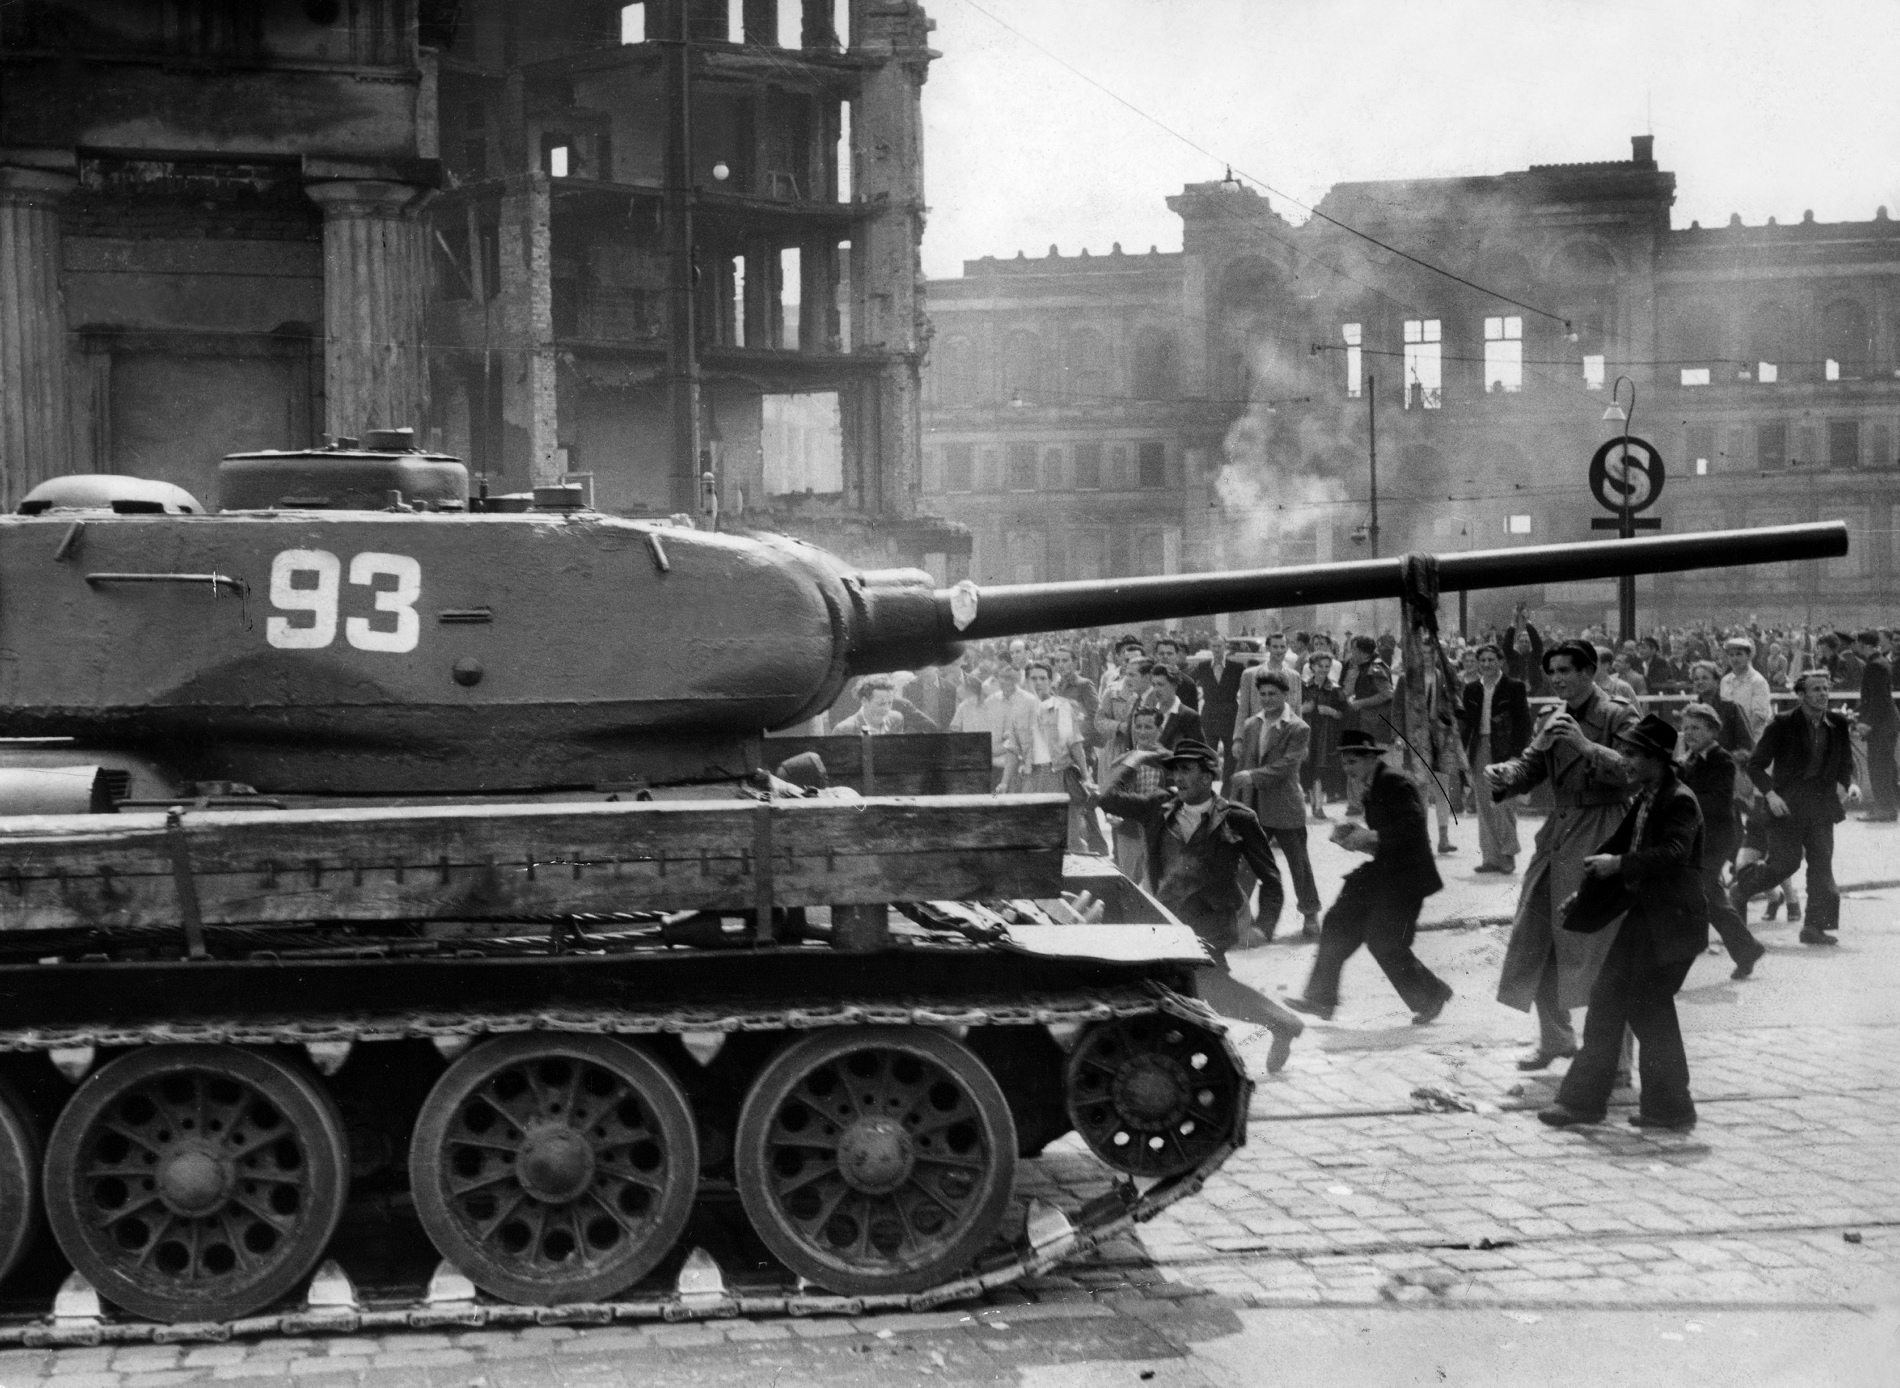 Sowieckie czołgi na Placu Poczdamskim w Berlinie podczas buntu robotniczego, czerwiec 1953 r.